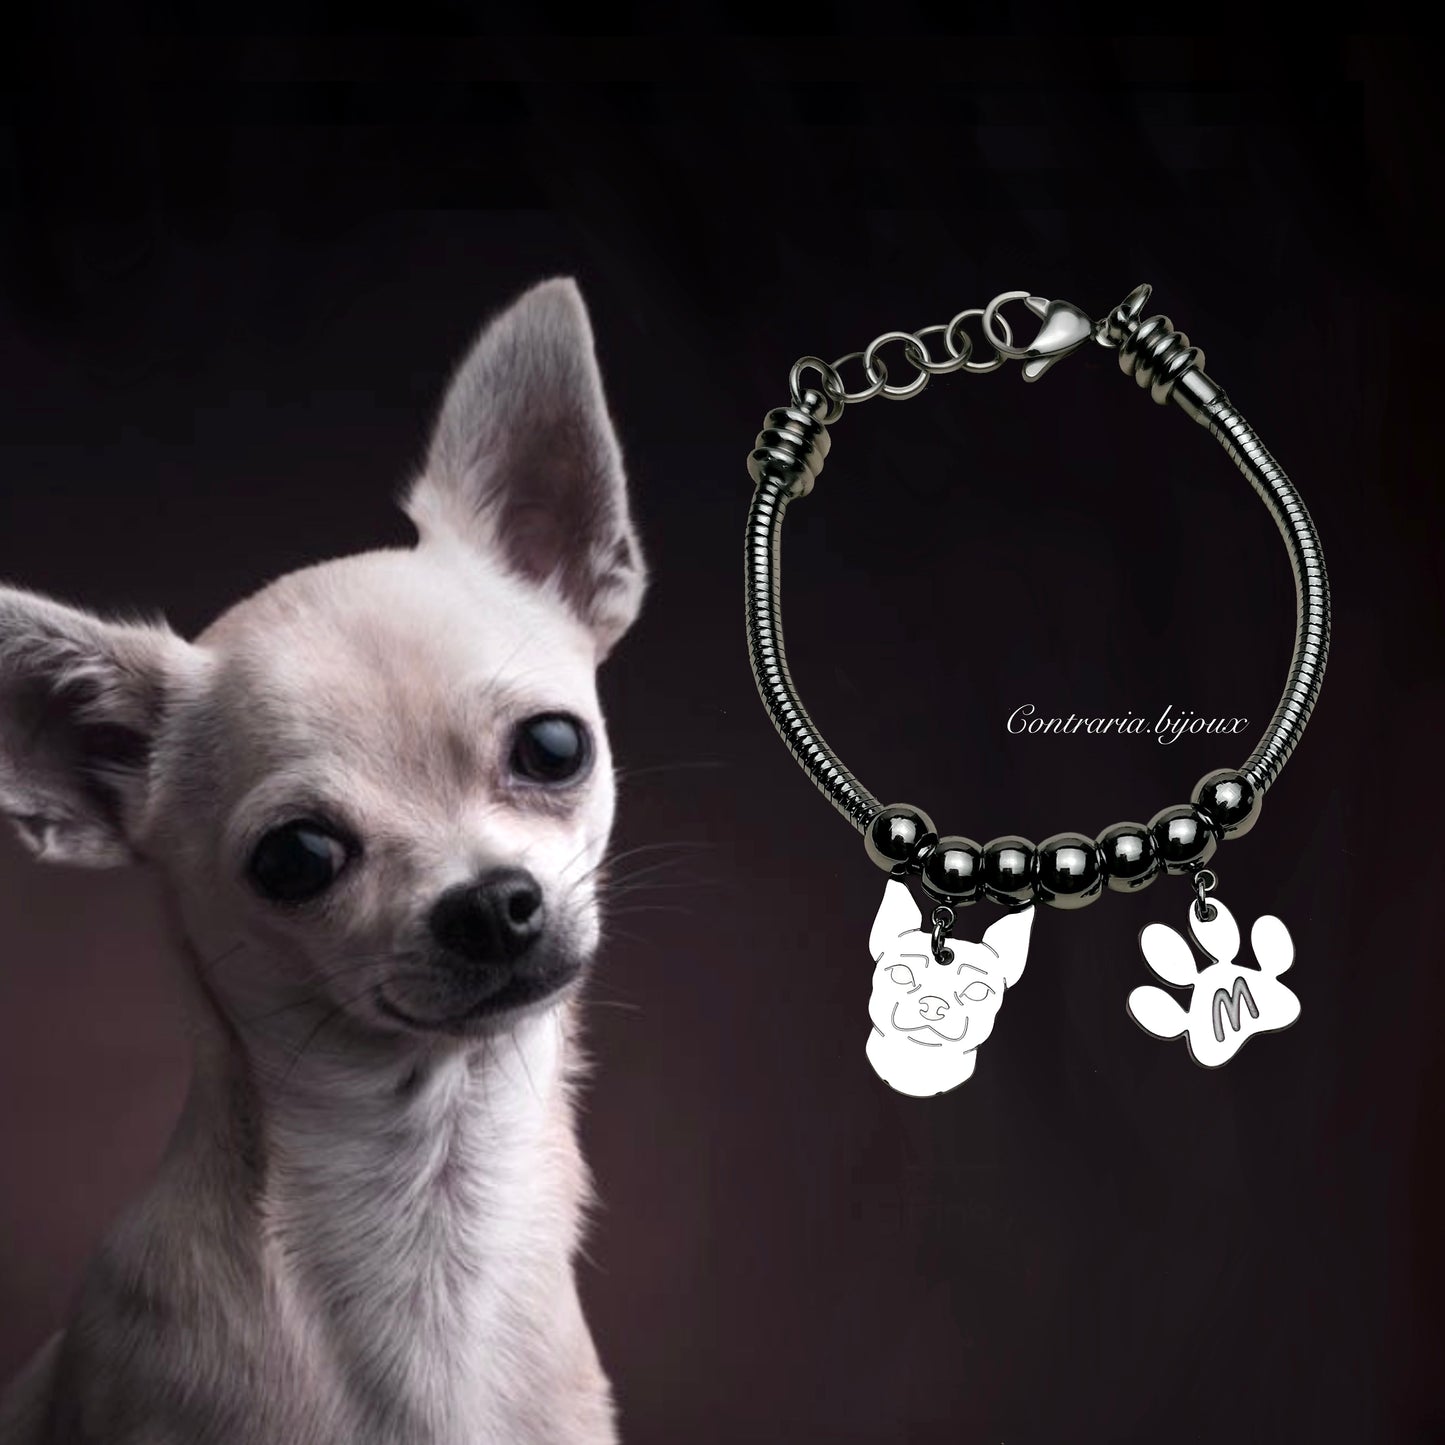 Bracciale cane Chihuahua e zampa con iniziale incisa